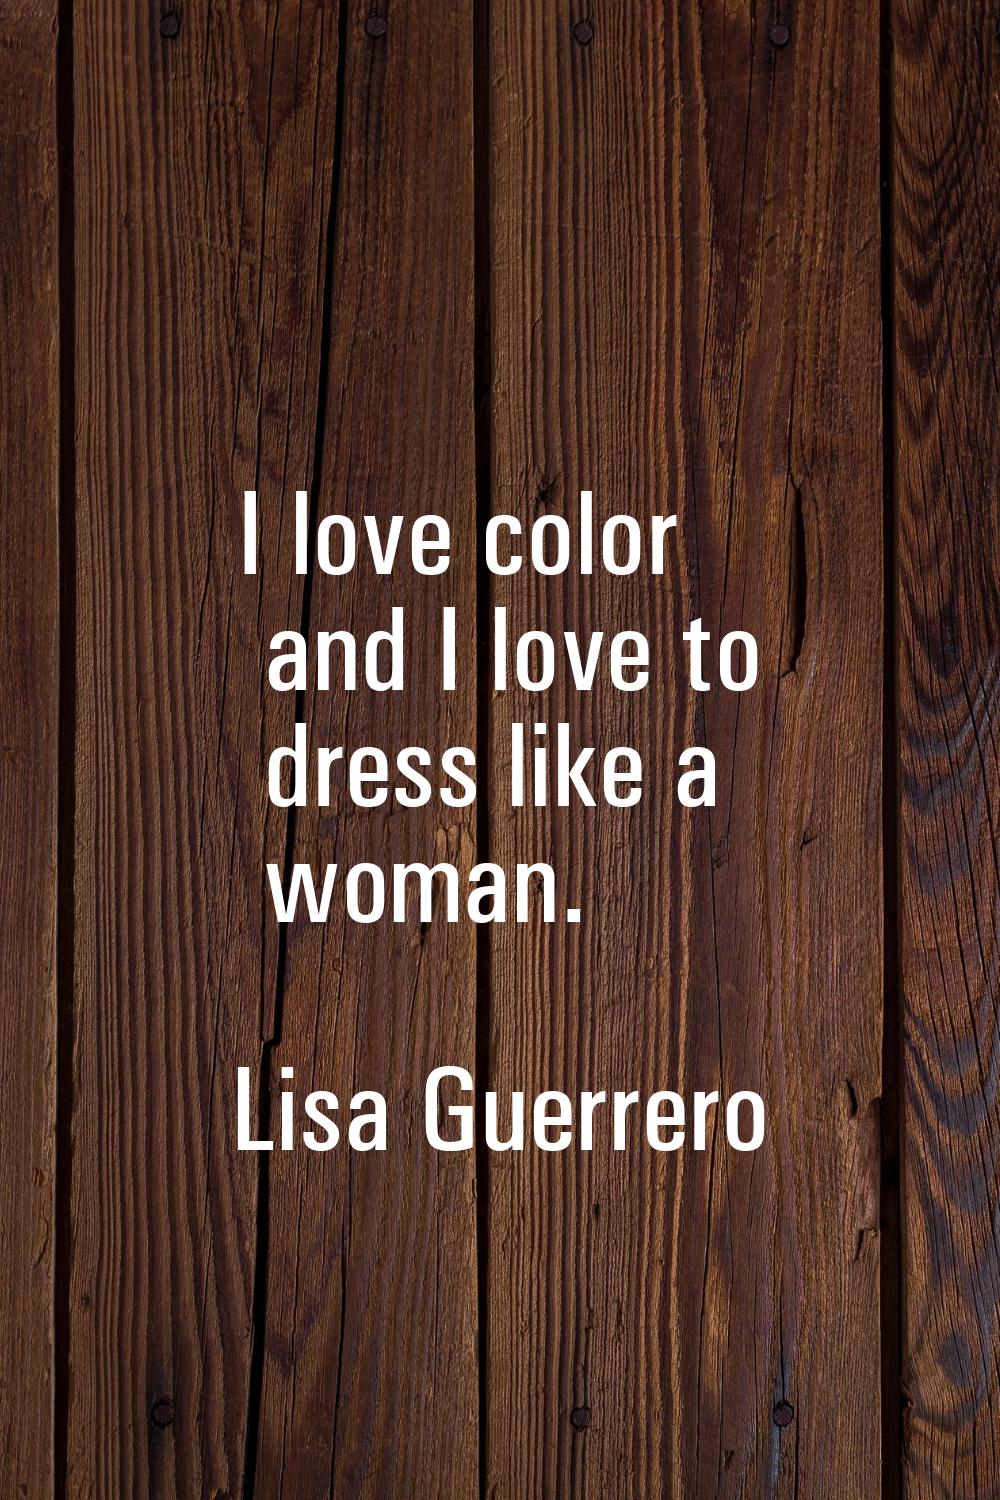 I love color and I love to dress like a woman.